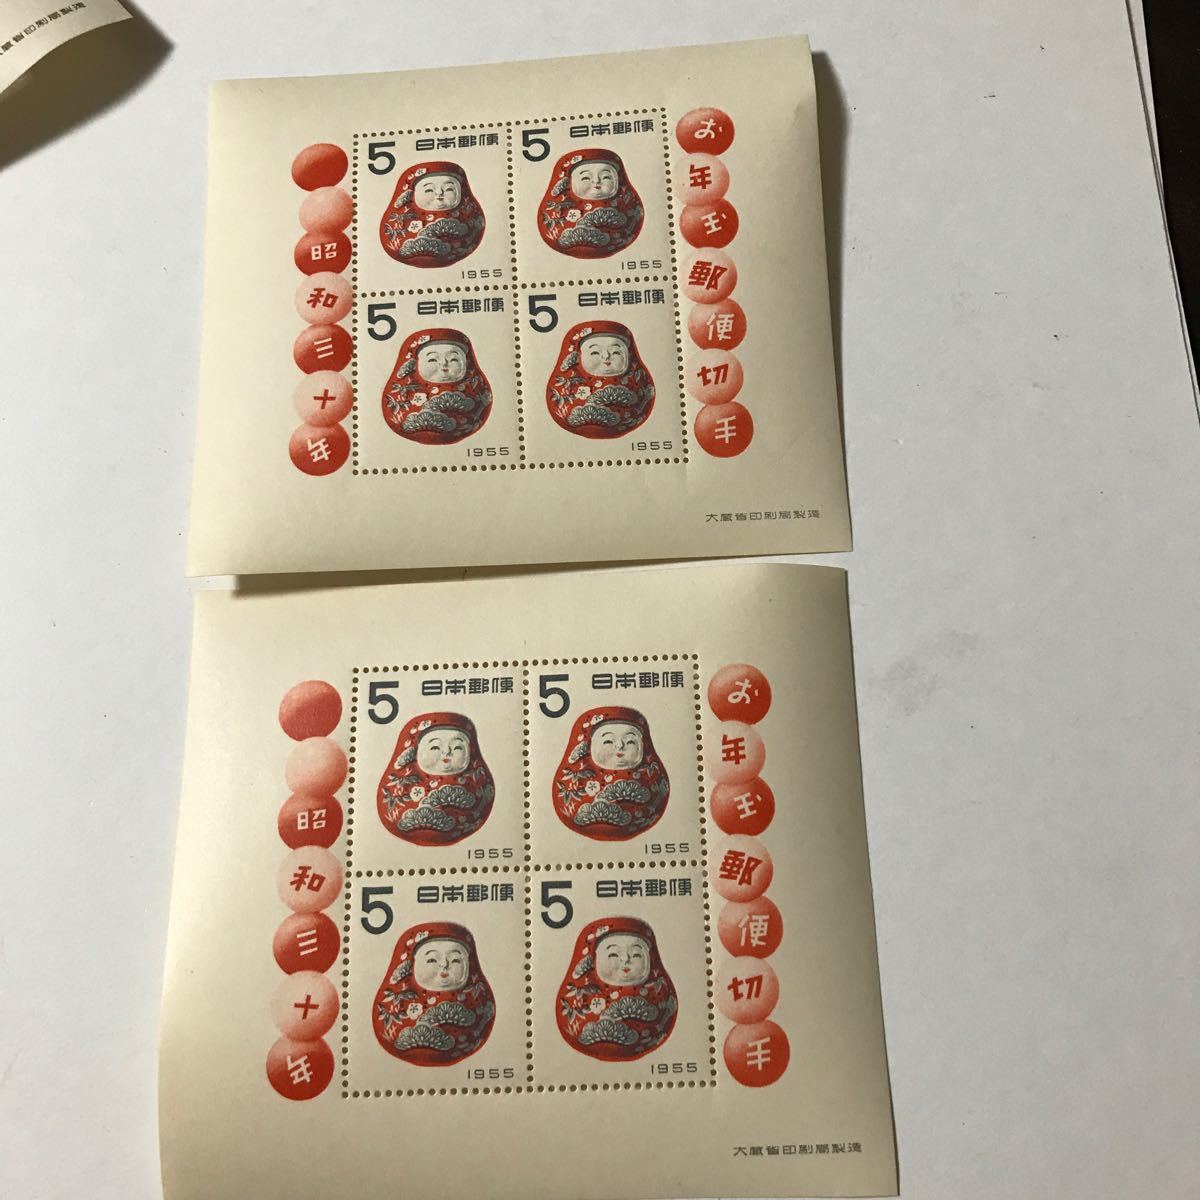 お年玉郵便切手 小型シート 年賀5906